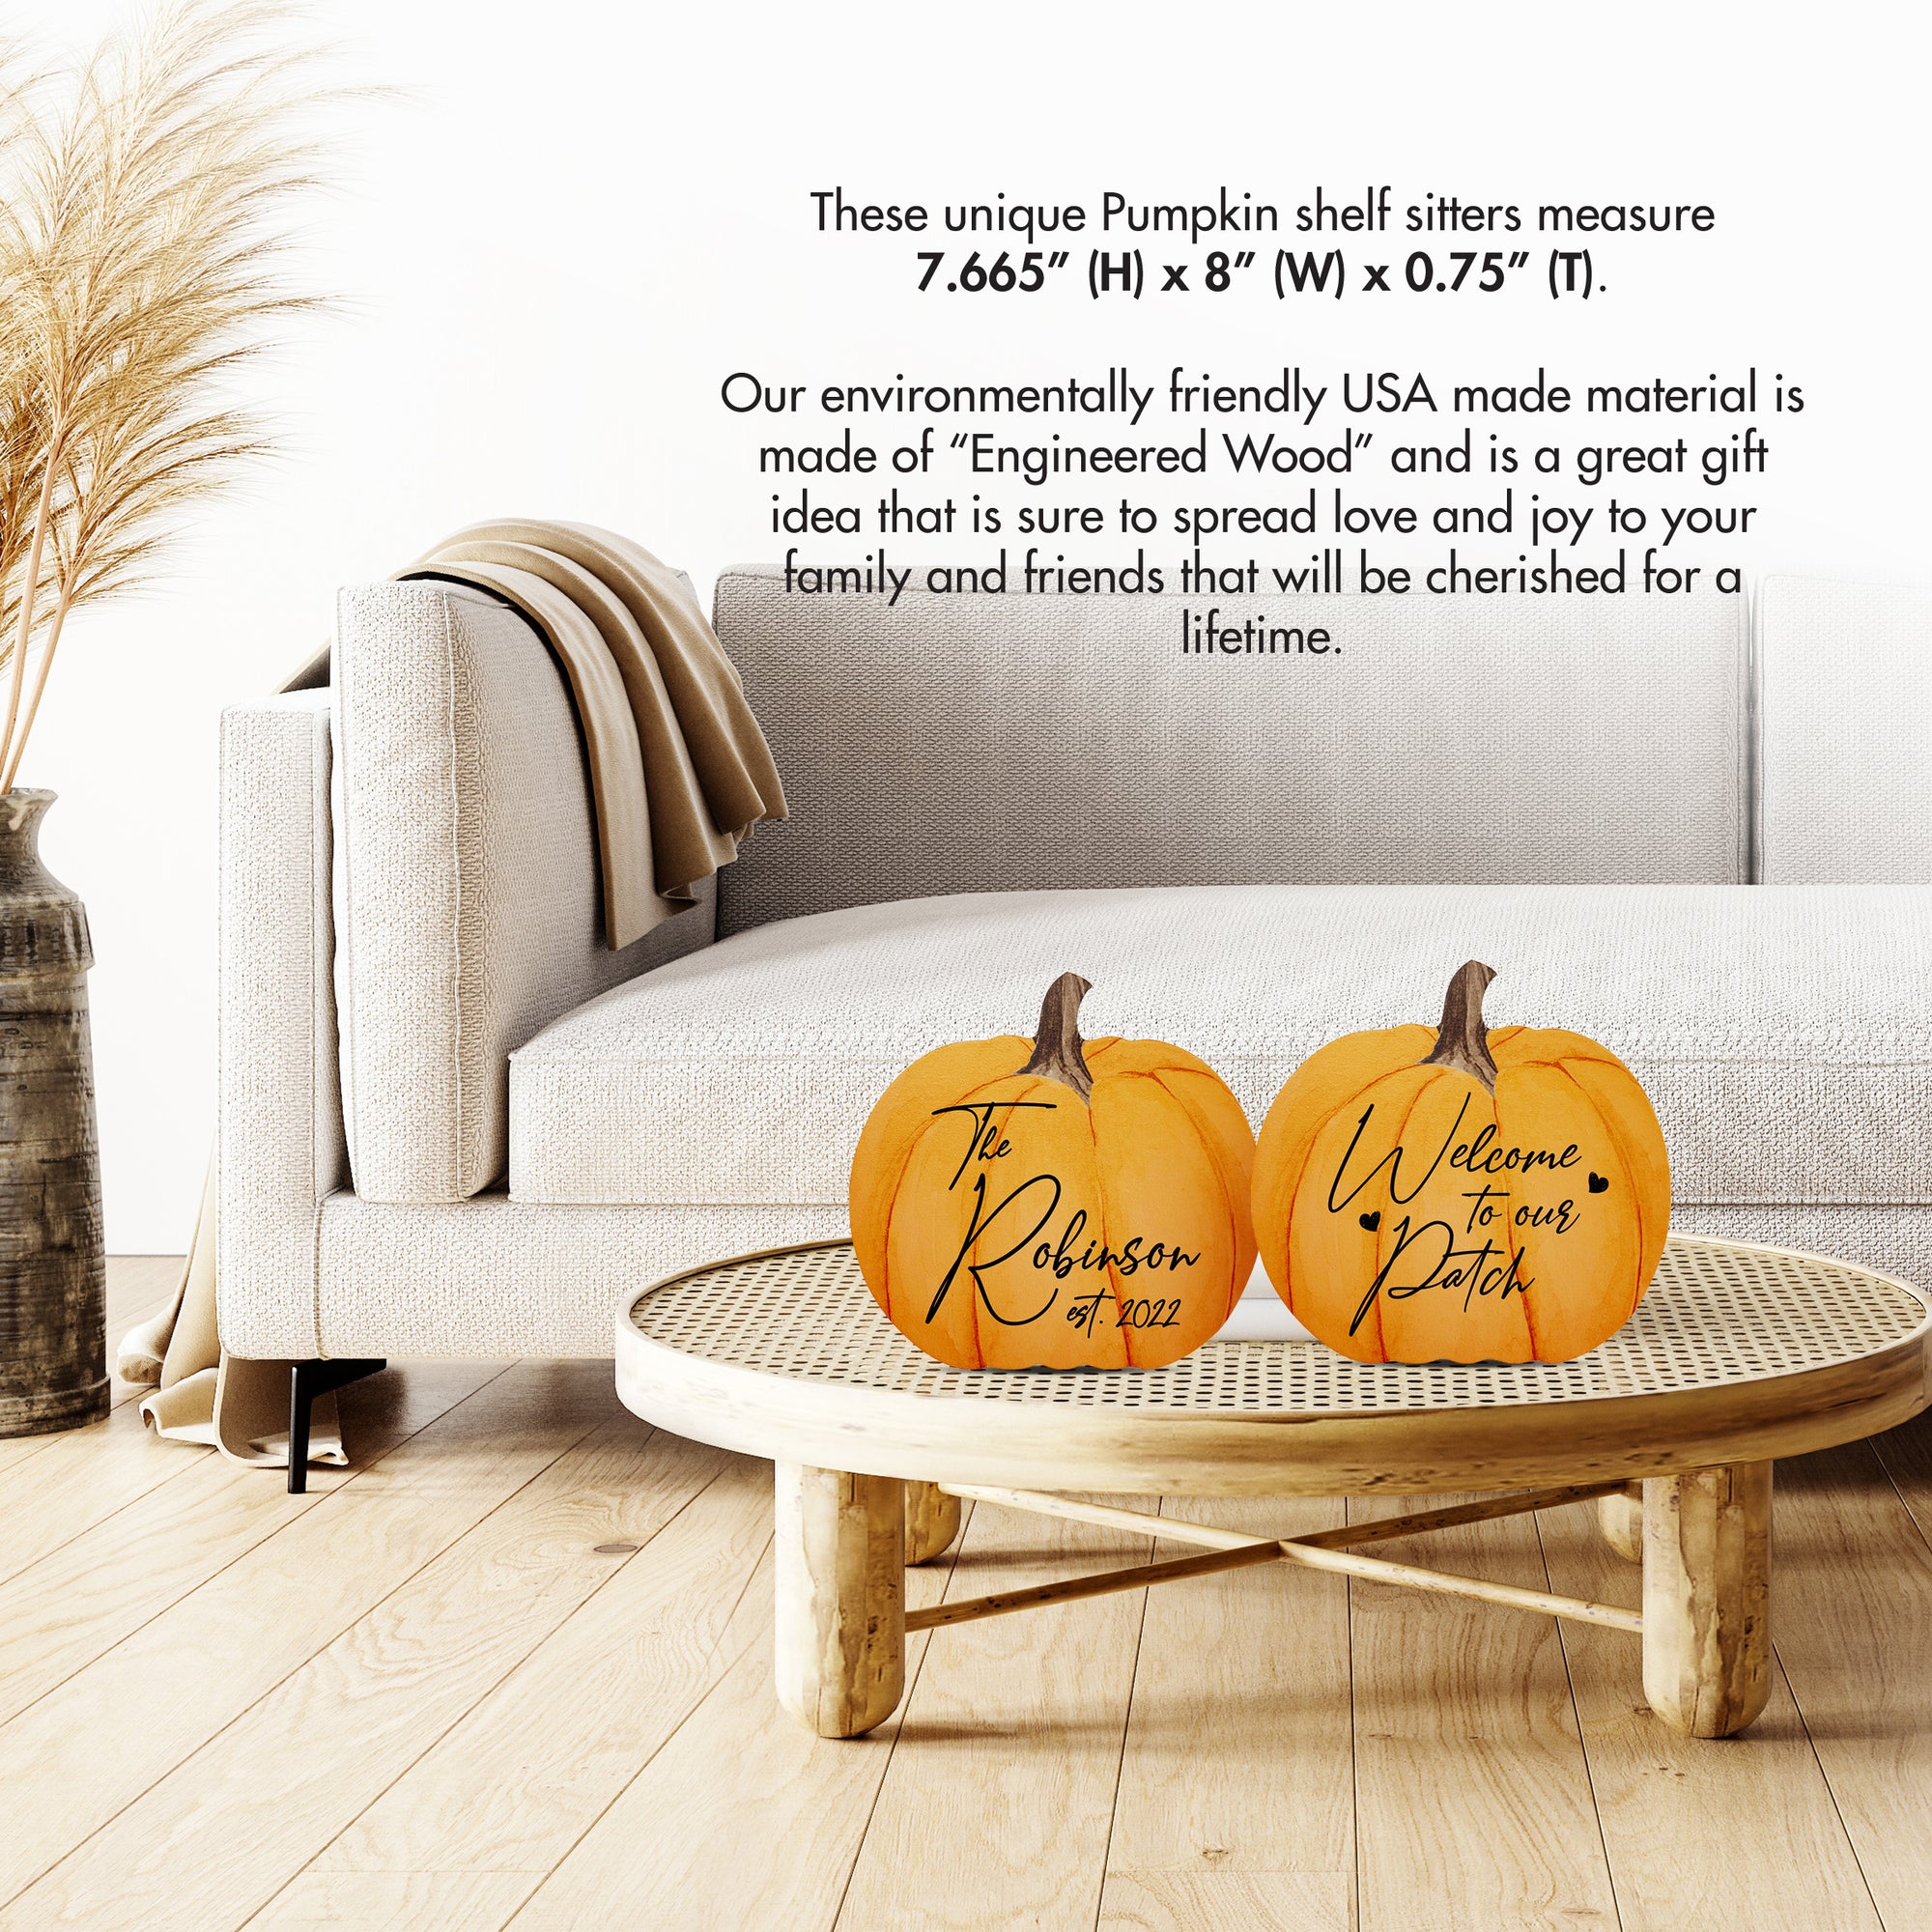 Pumpkin shelf decor Decorative Home Décor - Welcome To Our Patch Set